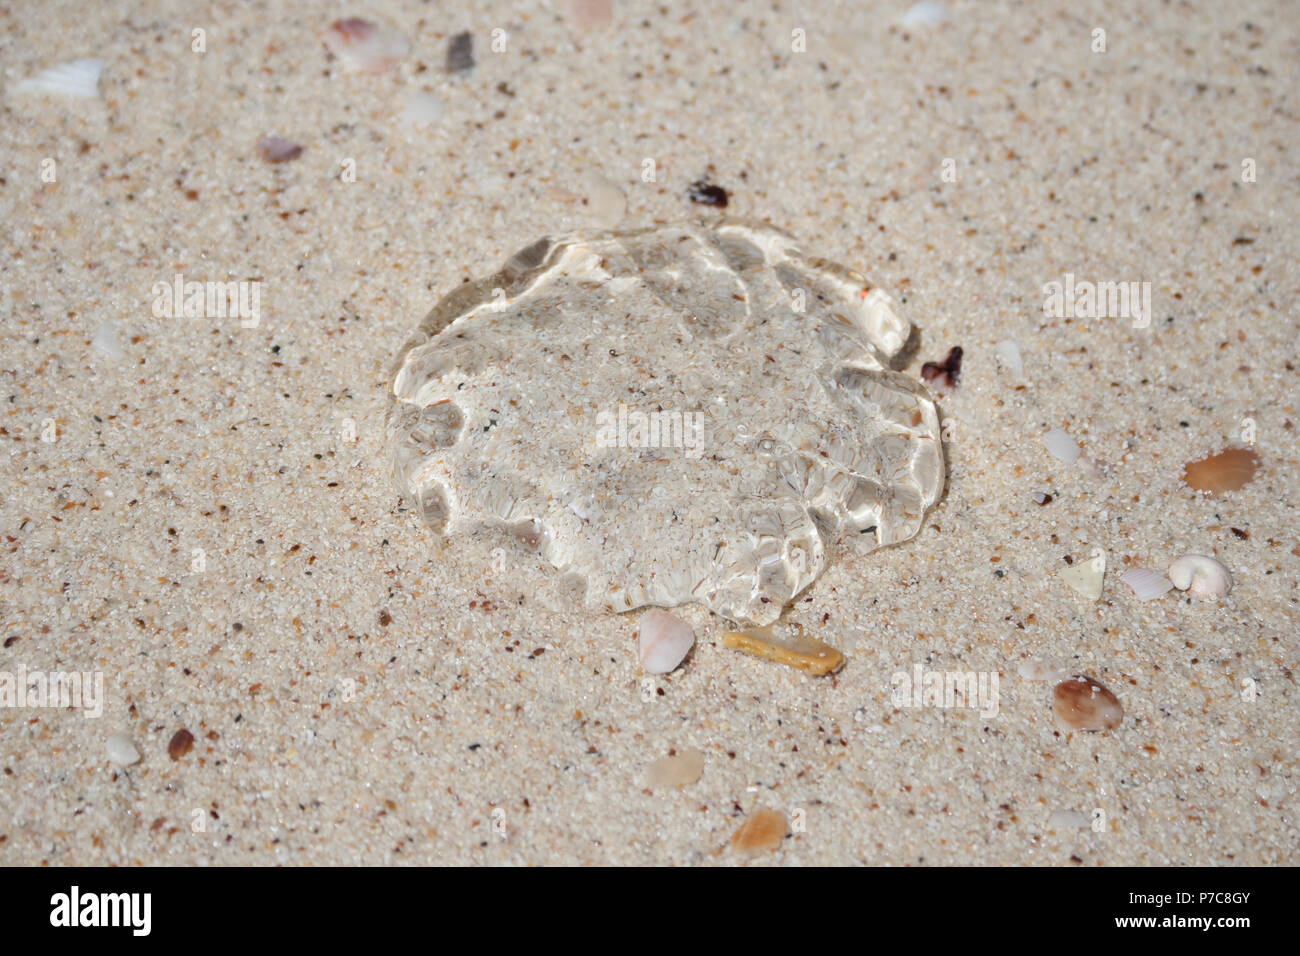 Nahaufnahme einer kompletten transparenten, Gallertartige, regenschirm-förmige Bell einer Qualle gewaschen an Land auf weißen Sandstrand Pulau Beras Besah's Beach, eine Insel... Stockfoto